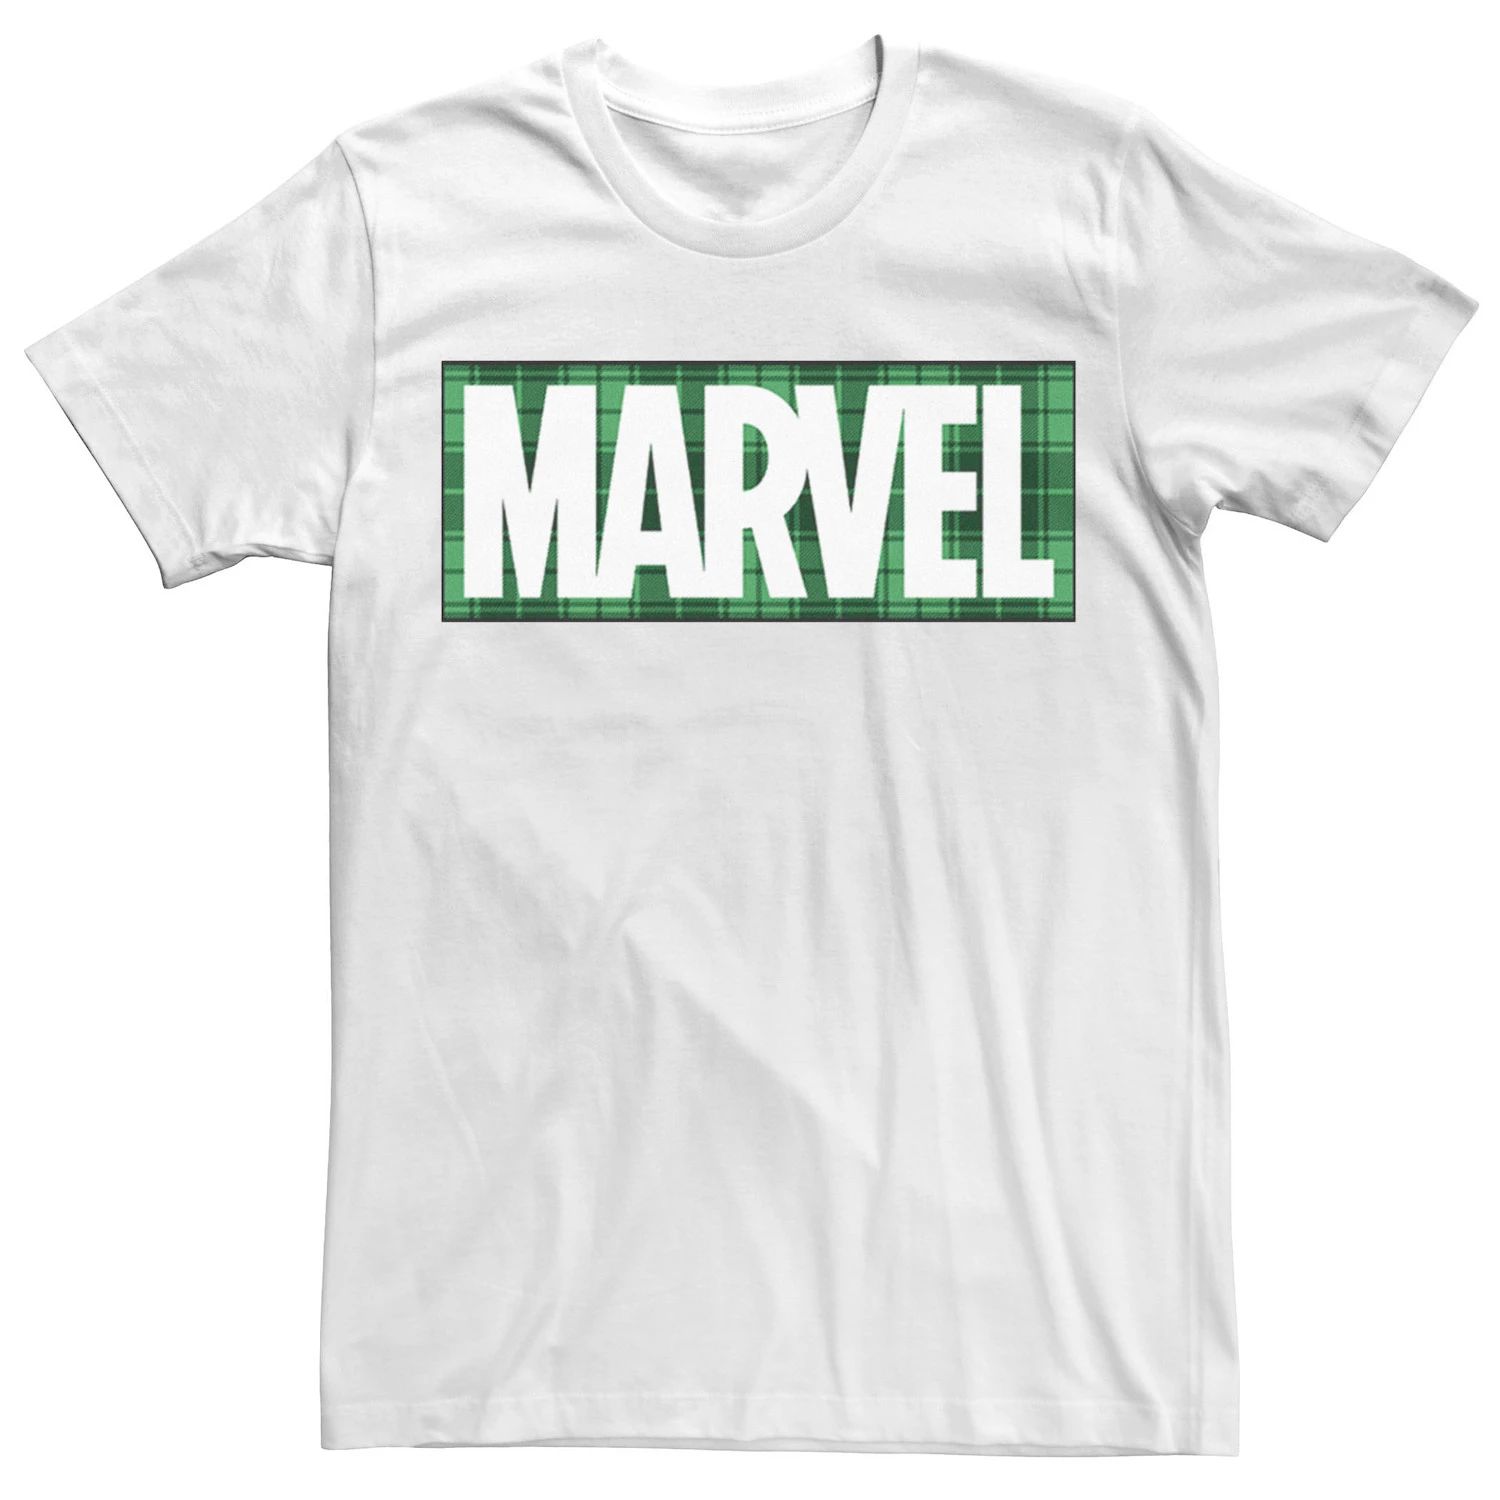 Мужская футболка с логотипом в клетку ко Дню Святого Патрика Marvel мужская футболка с надписью hulk lucky ко дню святого патрика marvel